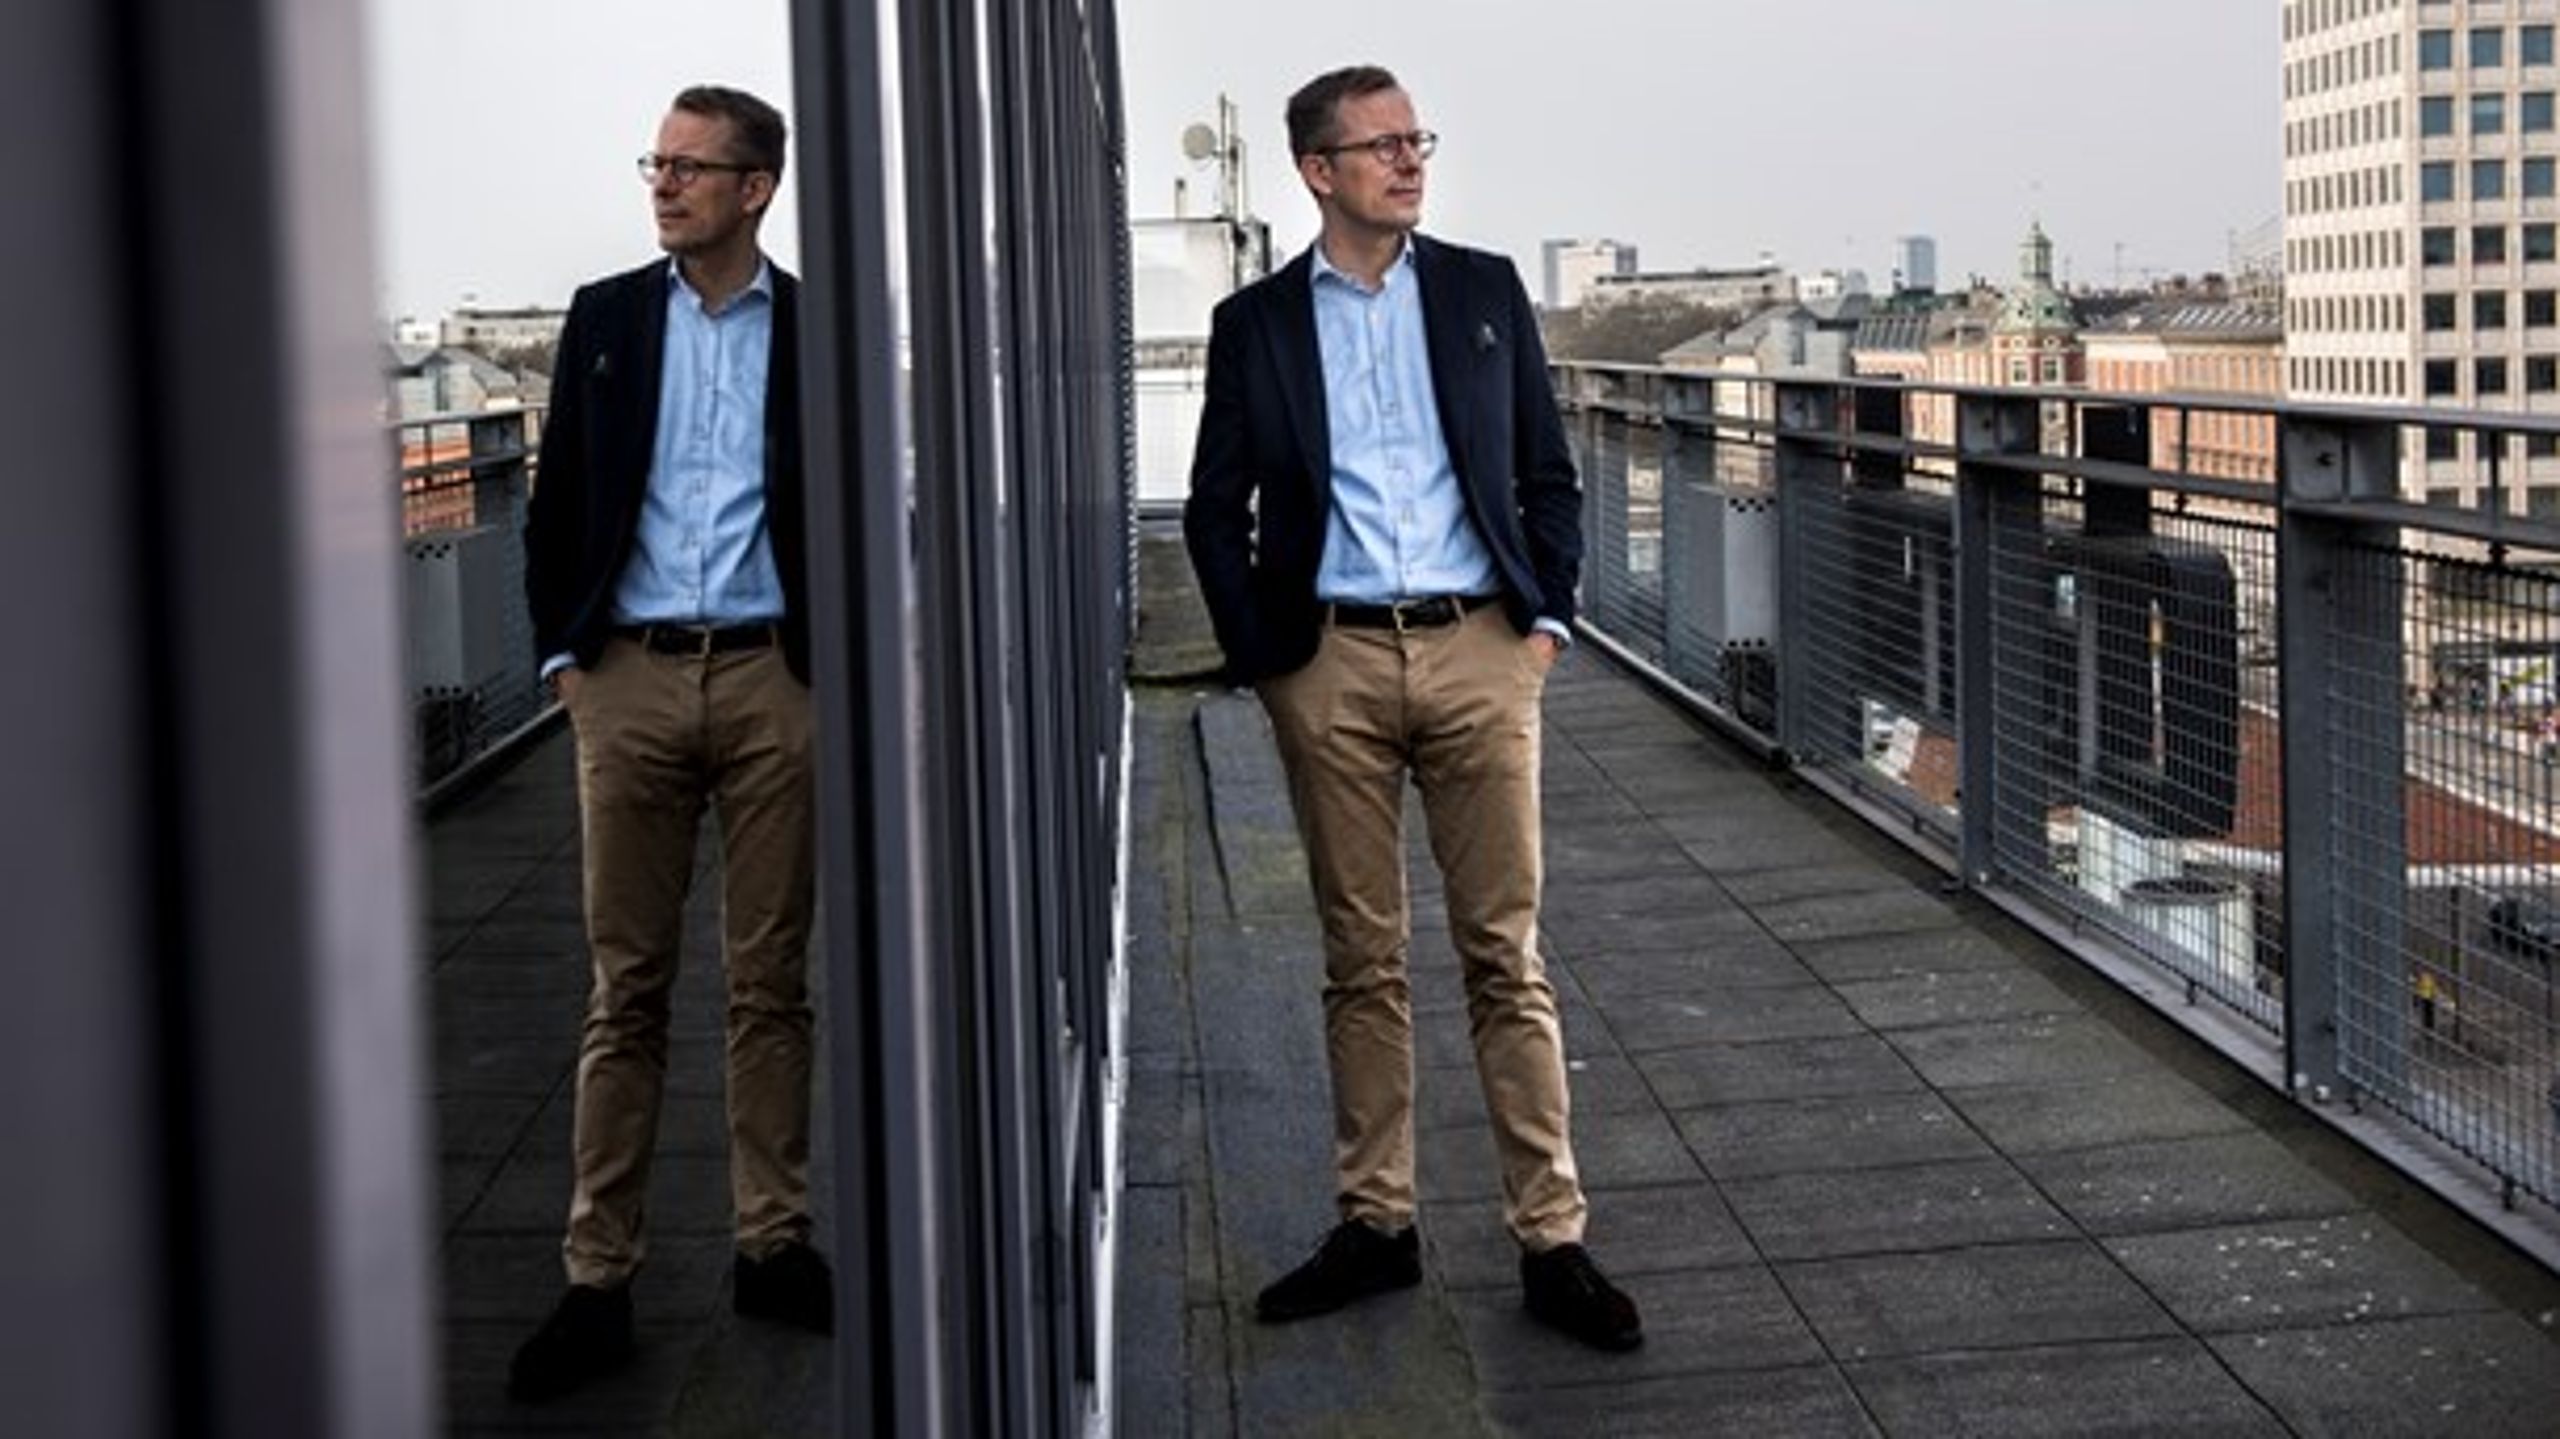 Den danske model kan ses som samfundets tjener, mener administrerende direktør i Dansk Byggeri, Lars Storr-Hansen.